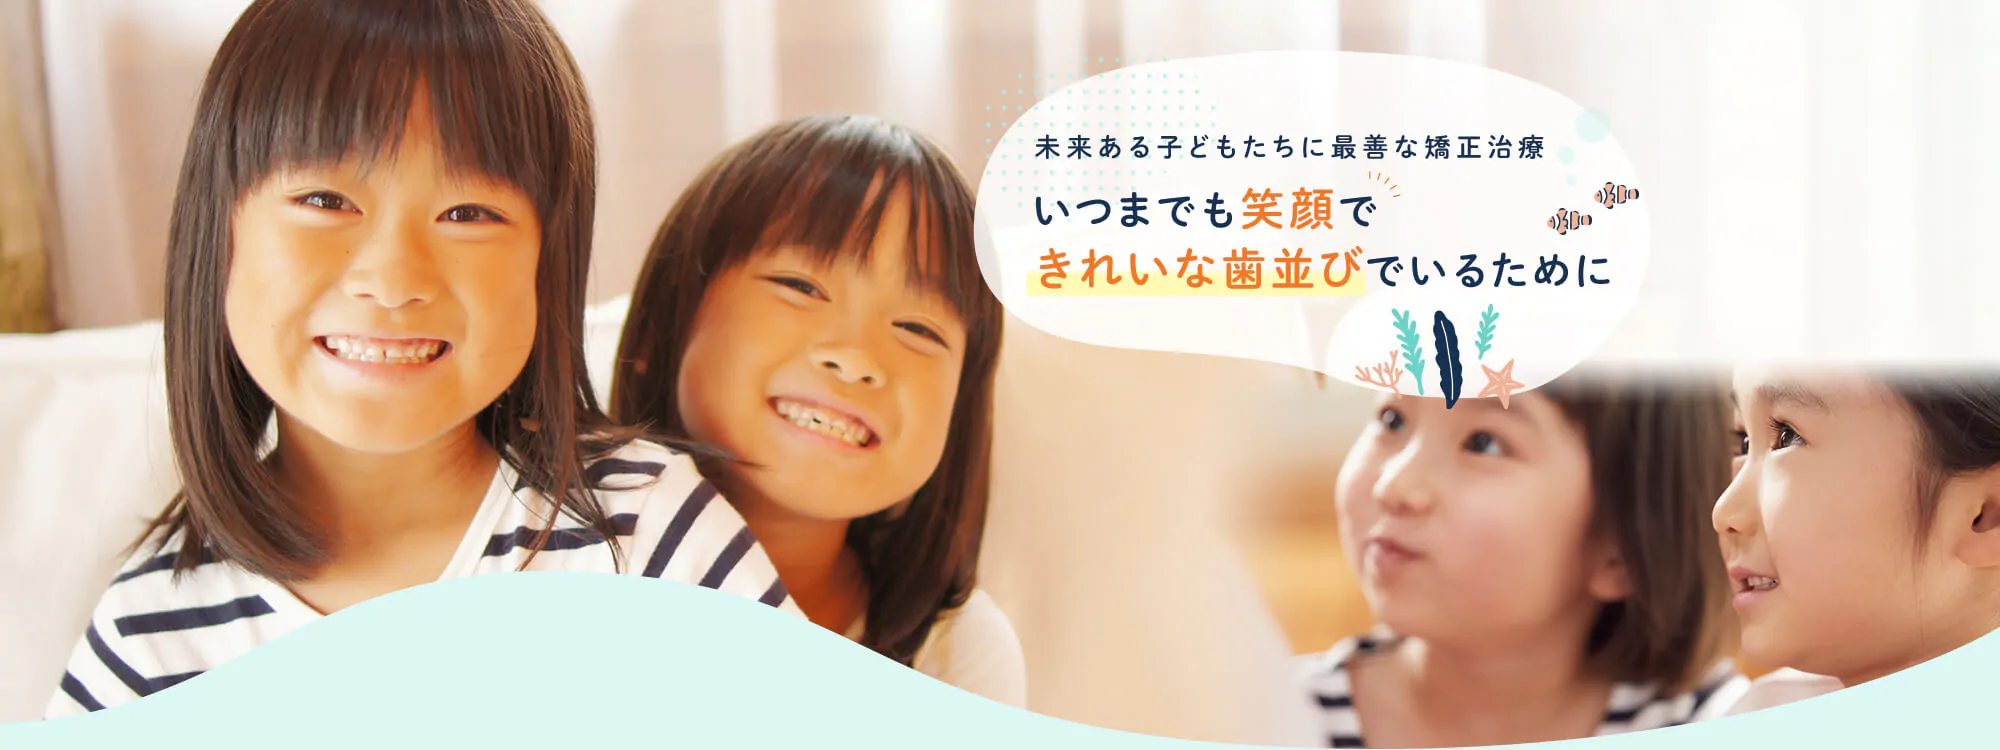 未来ある子どもたちに最善な矯正治療 いつまでも笑顔できれいな歯並びでいるために